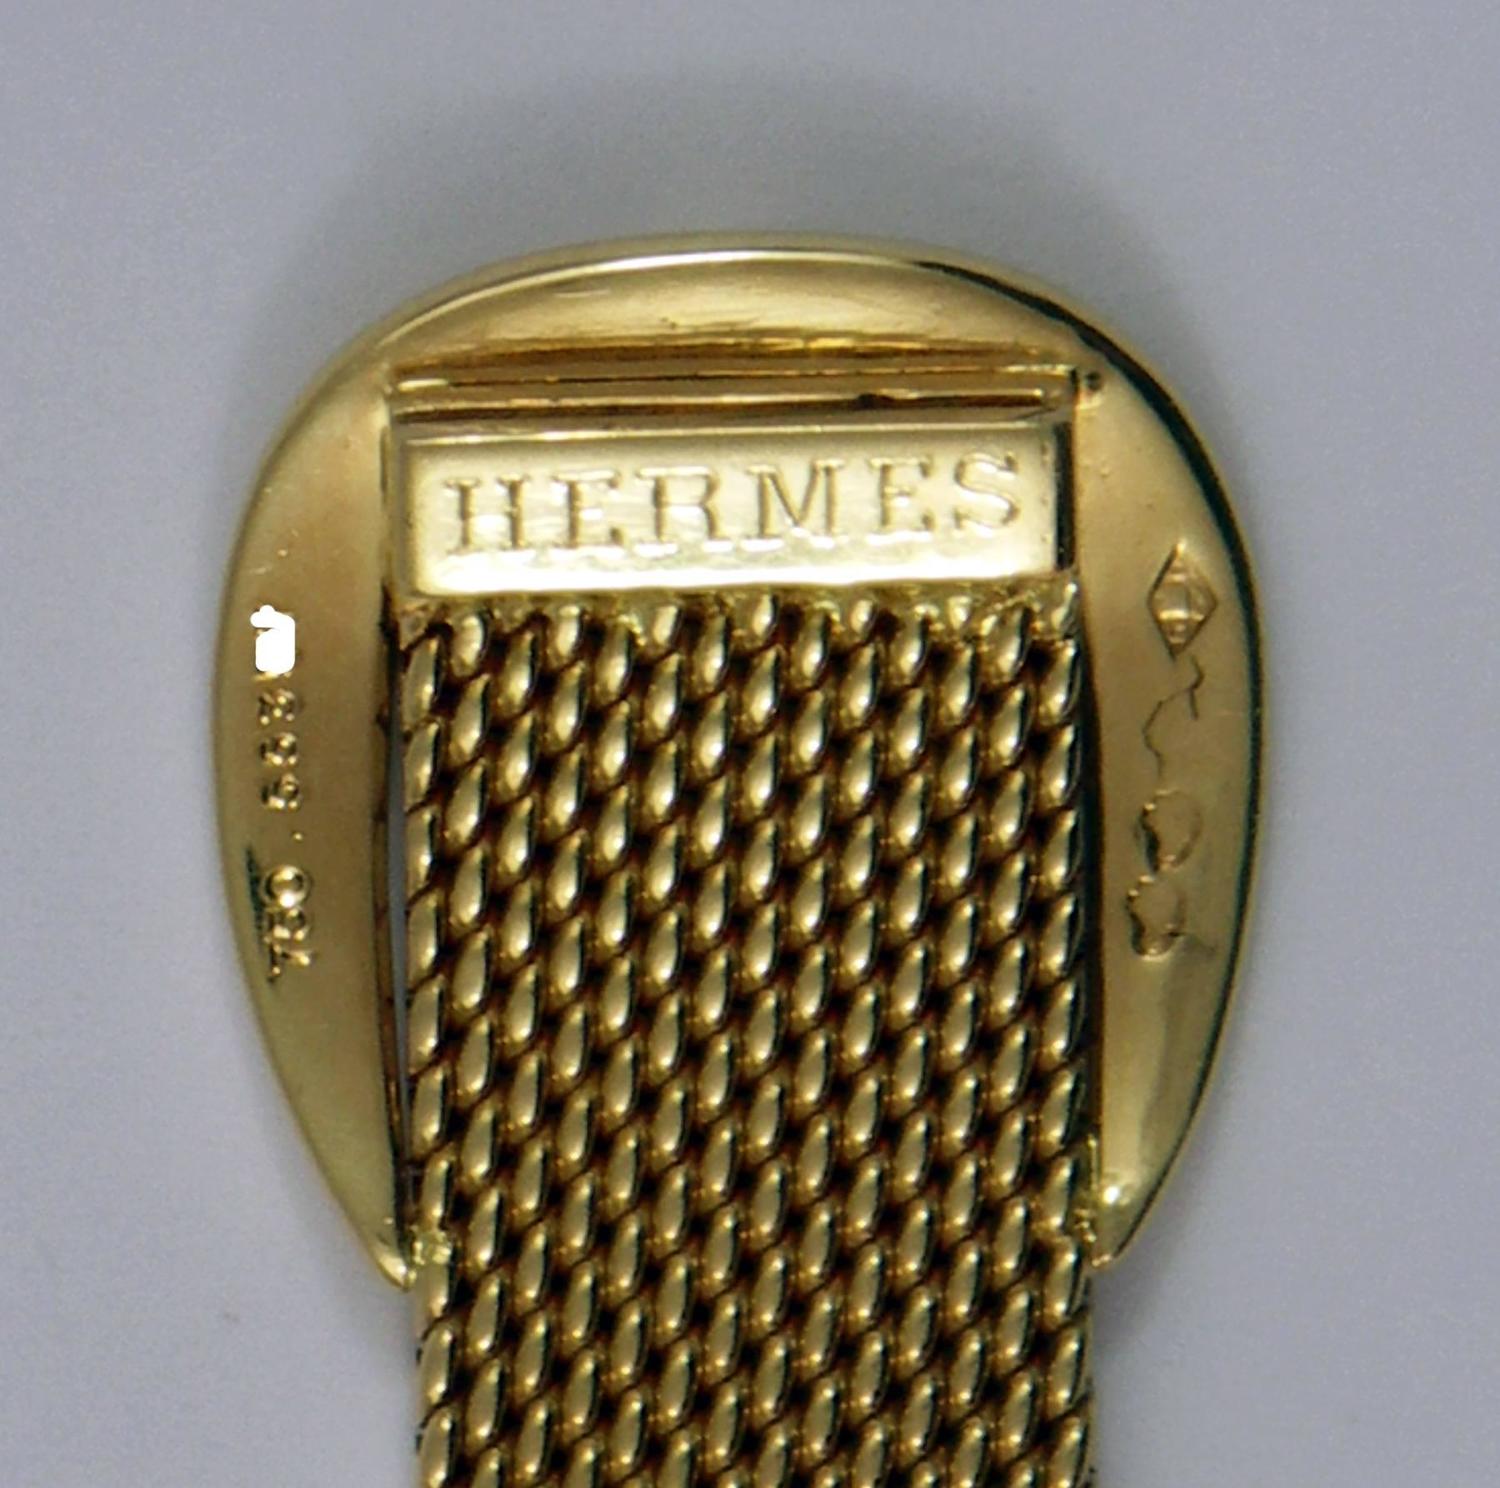 Hermes Gold Bracelet For Sale at 1stdibs